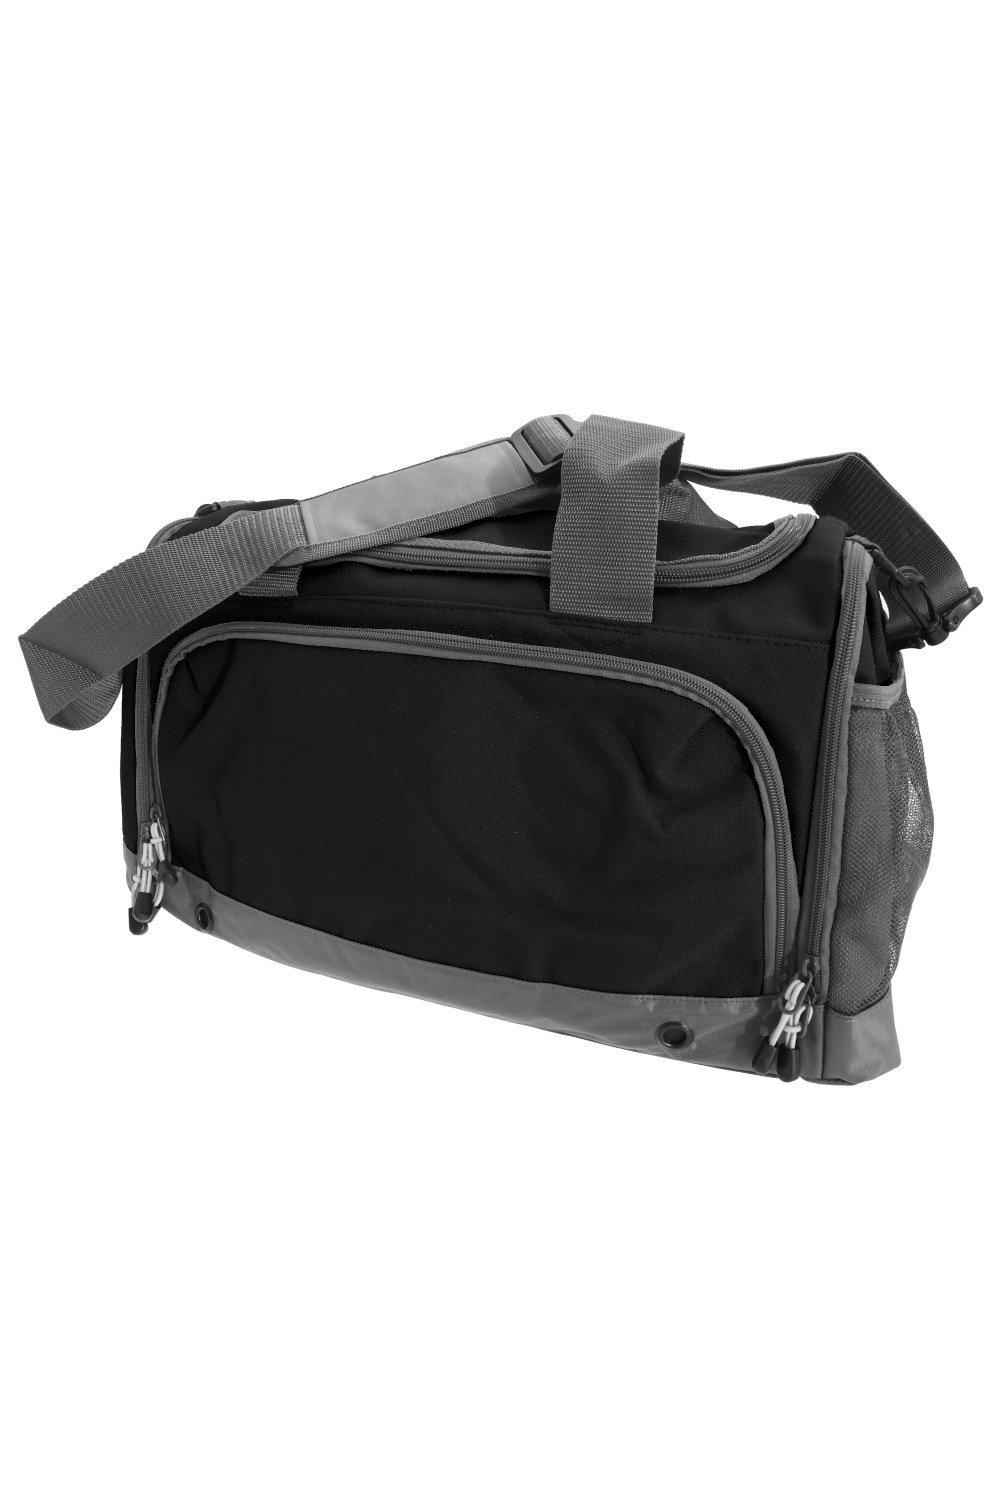 Спортивная сумка/спортивная сумка Bagbase, черный спортивная сумка mp arnold series черный зеленый